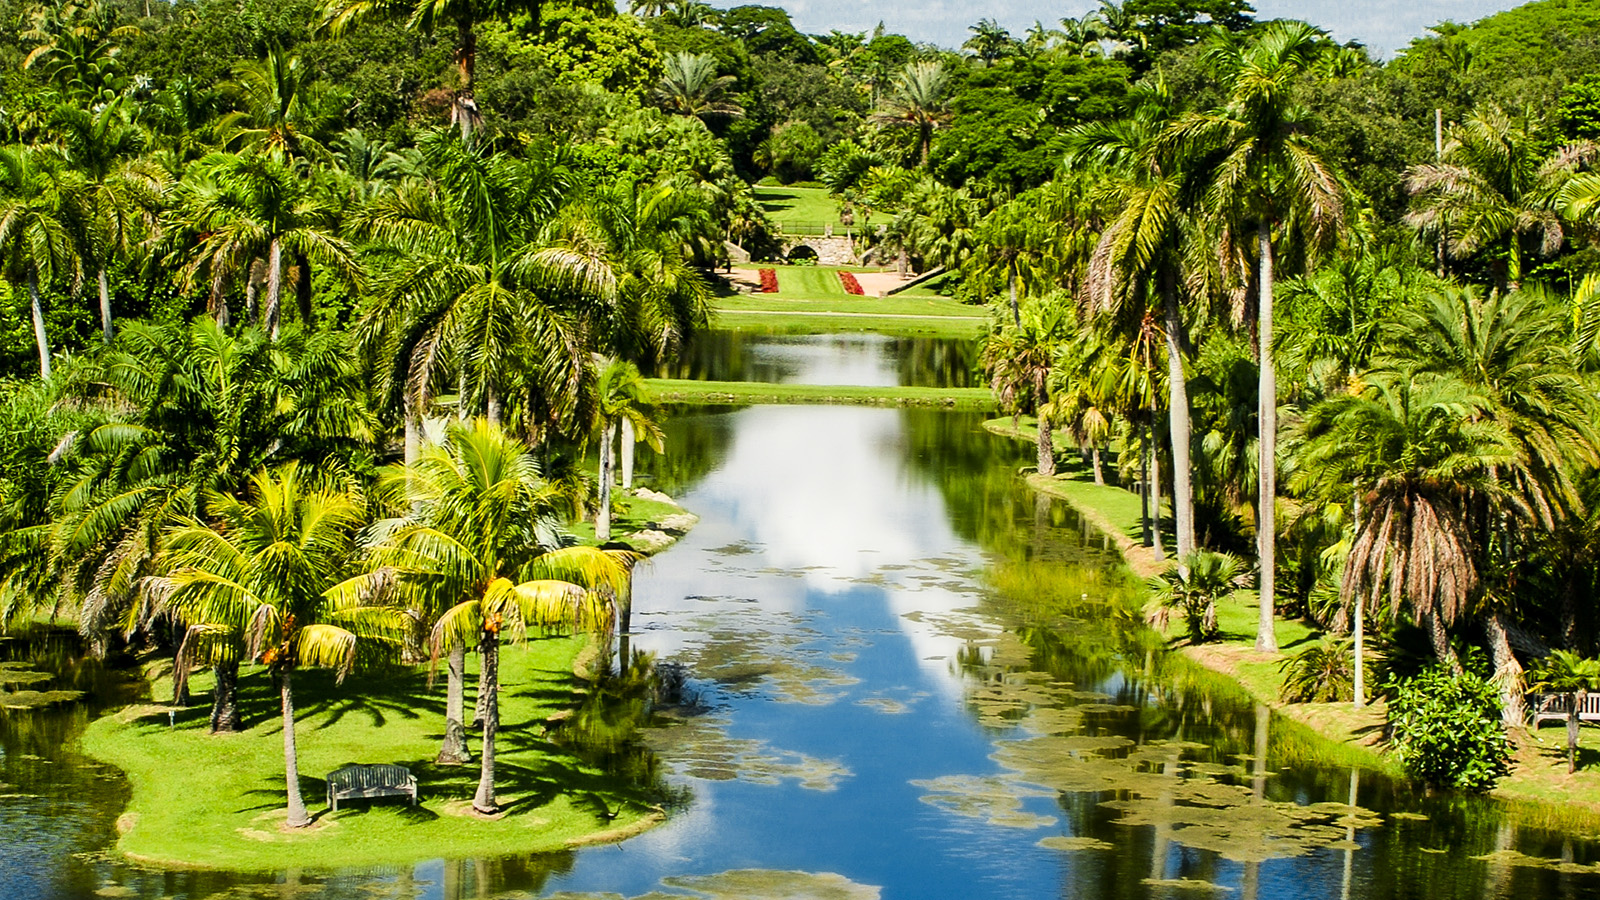 Fairchild Tropical Botanic Garden, Coral Gables, FL